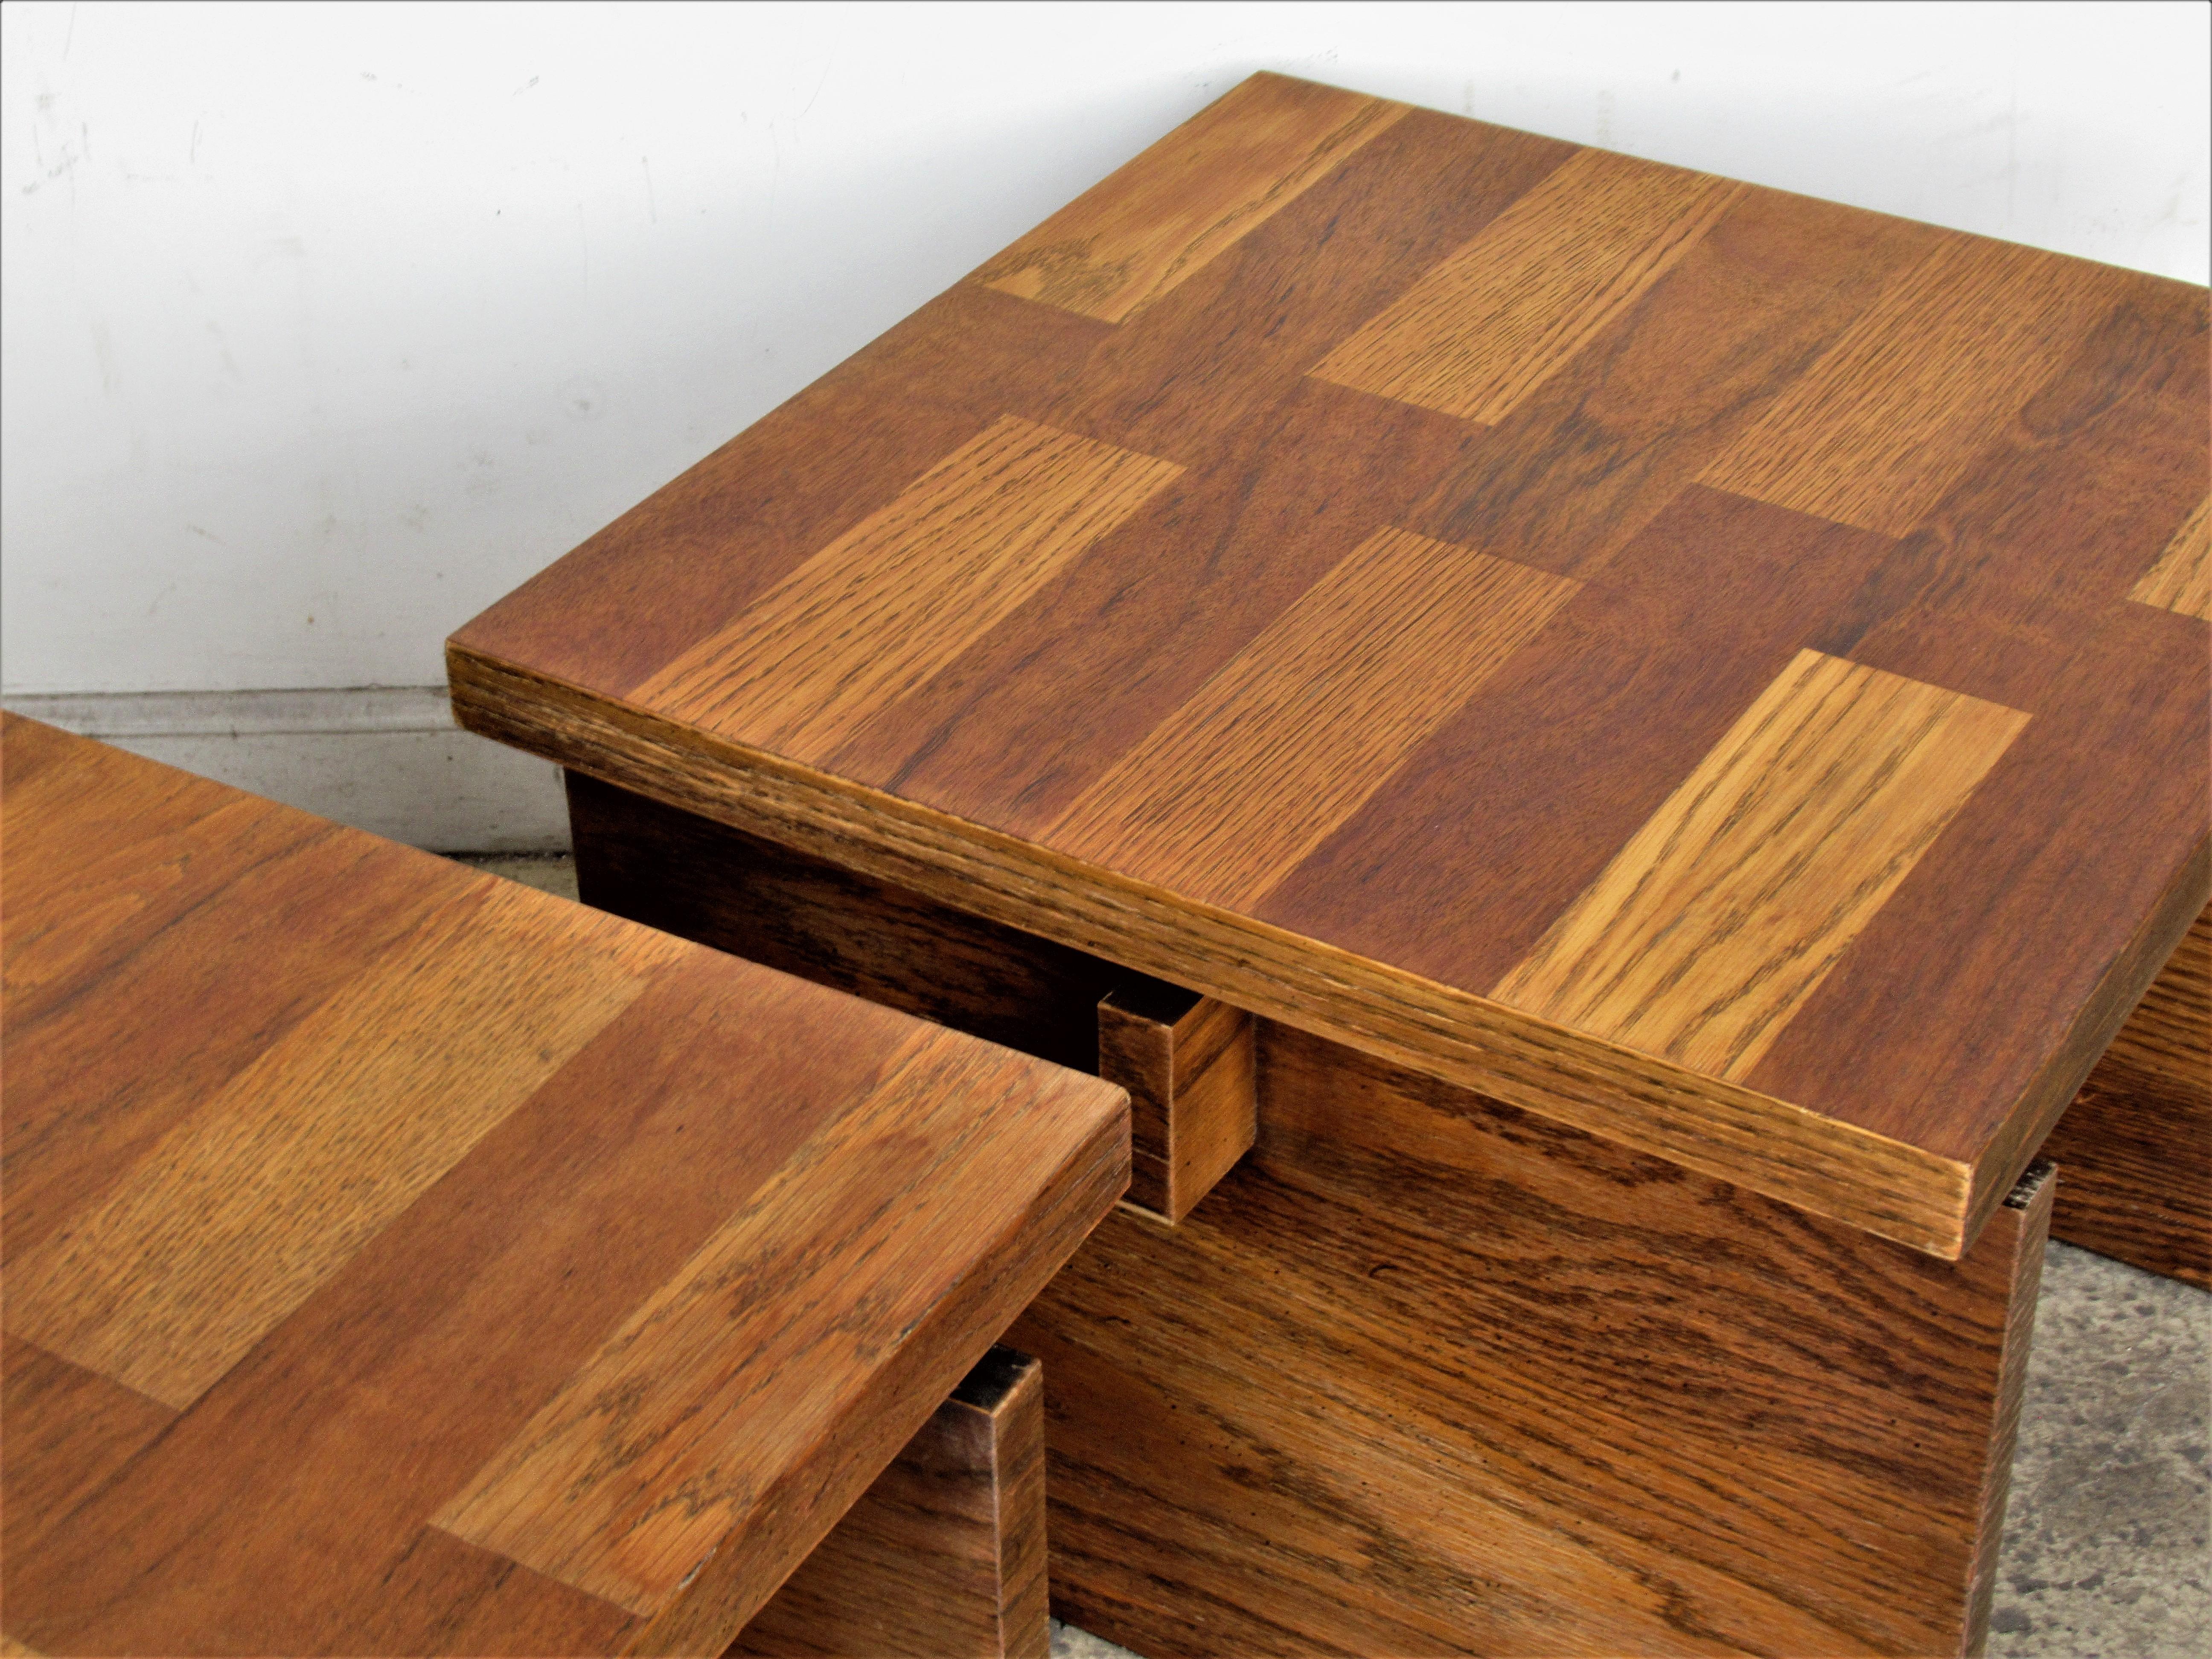  Oak Parquet Design End Tables by Lane Furniture 2